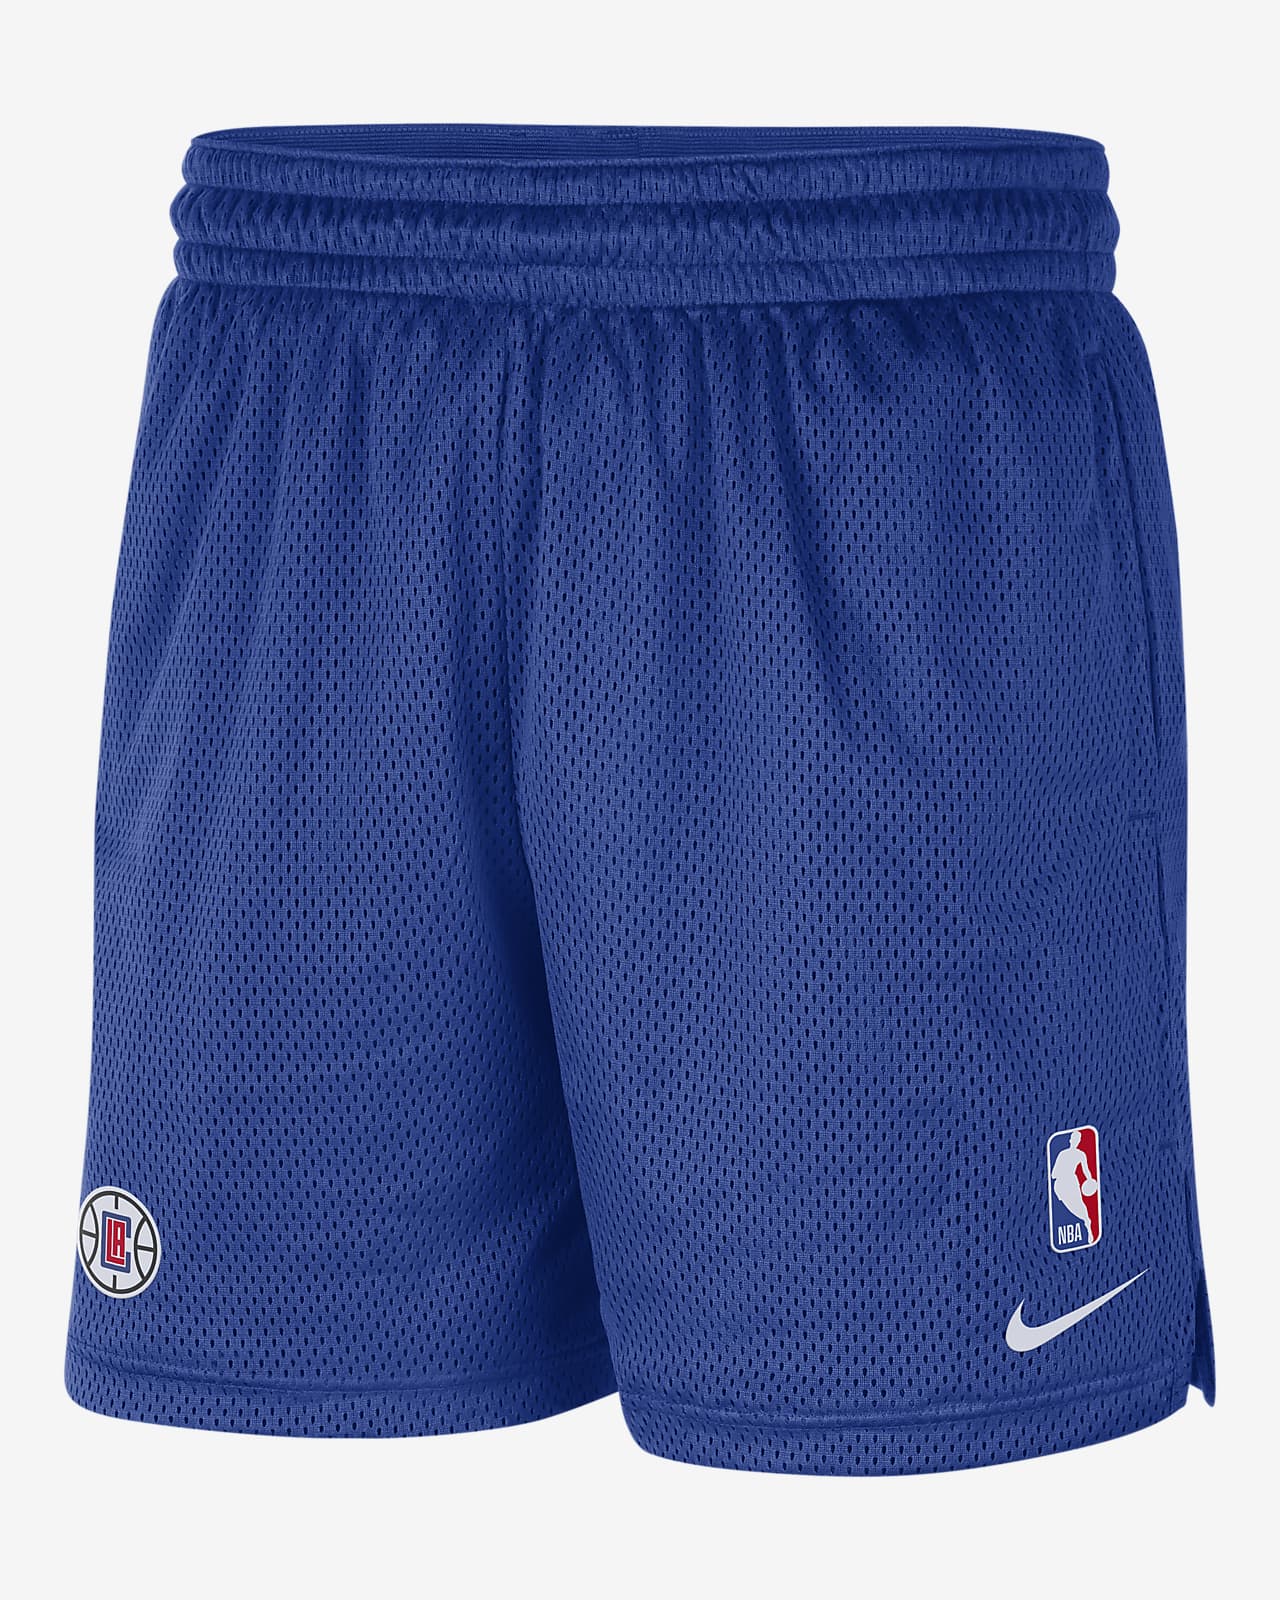 Shorts Nike NBA para hombre LA Clippers